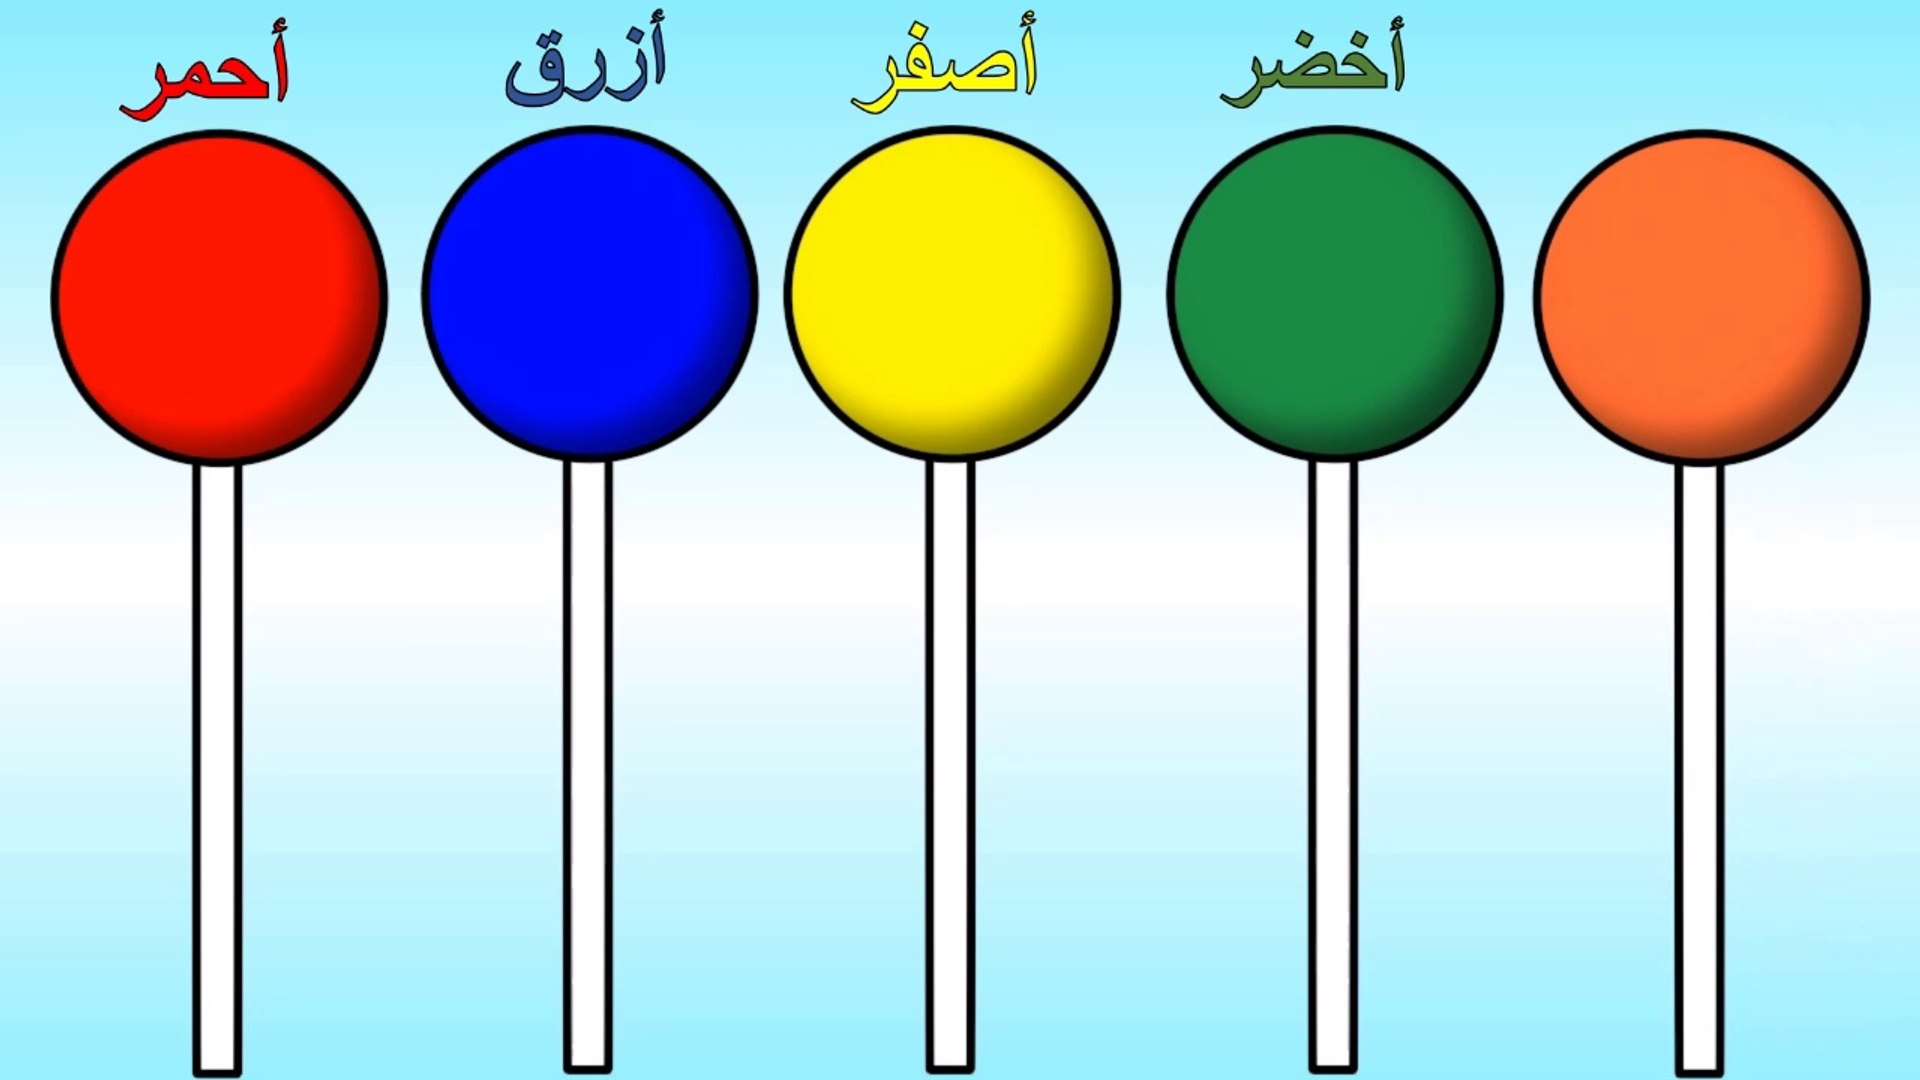 الوان الحلوى - تعليم الالوان مع مصاصة الحلوى - الالوان بالعربي - فيديو  Dailymotion